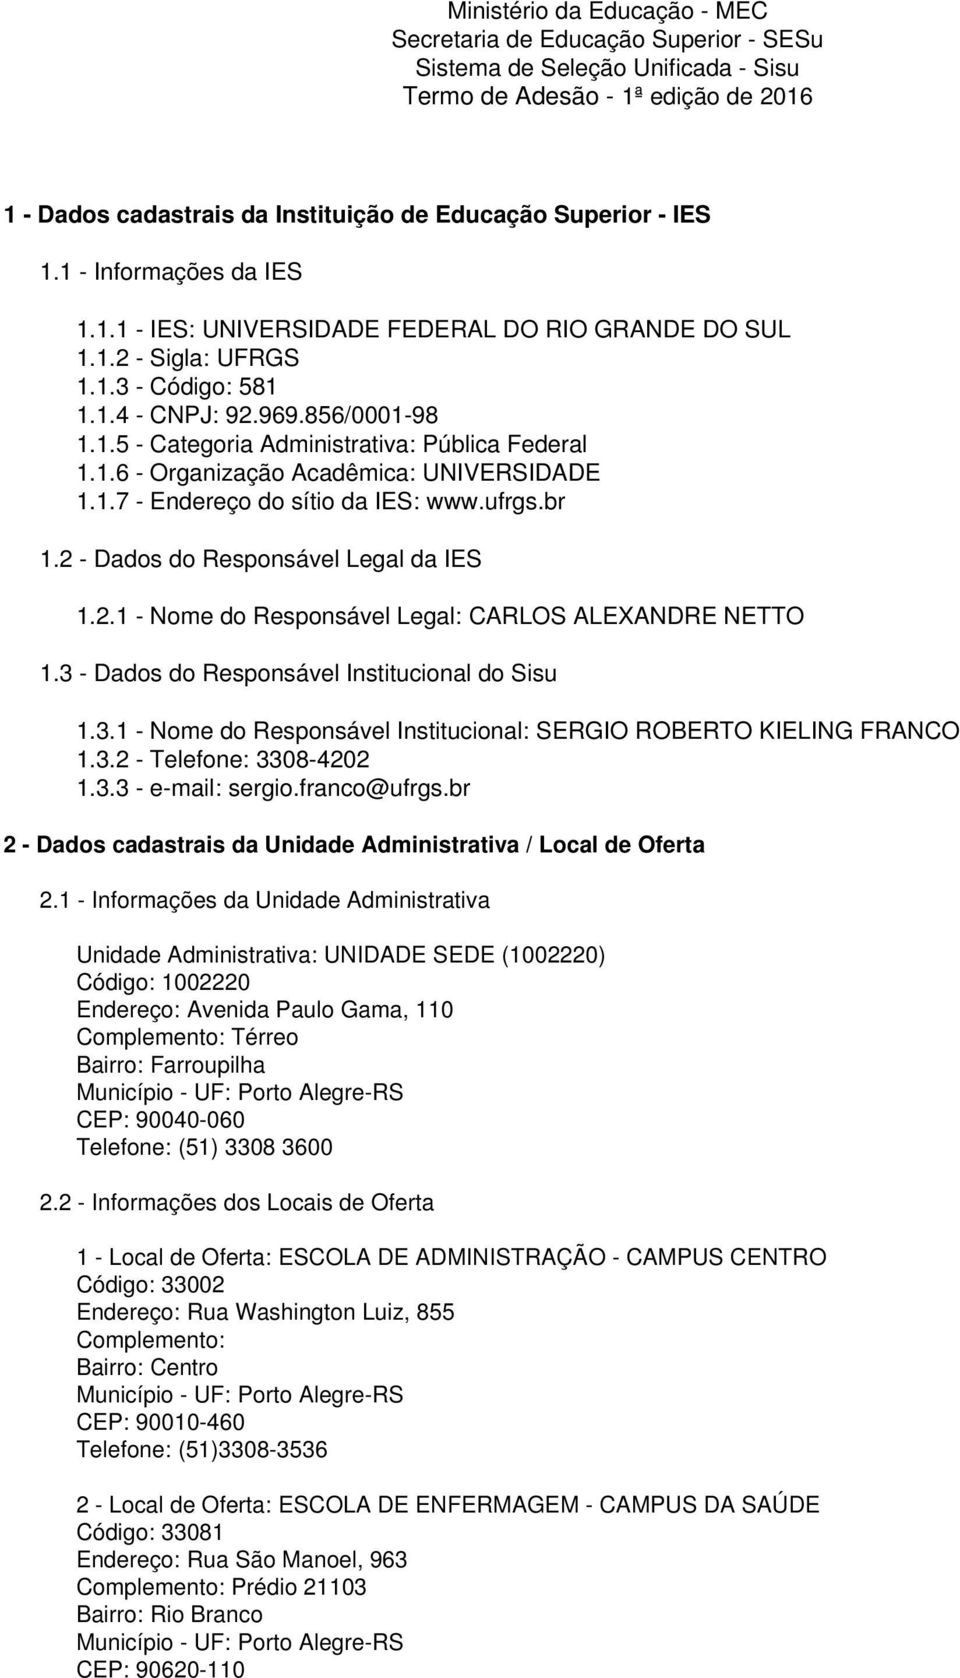 1.6 - Organização Acadêmica: UNIVERSIDADE 1.1.7 - Endereço do sítio da IES: www.ufrgs.br 1.2 - Dados do Responsável Legal da IES 1.2.1 - Nome do Responsável Legal: CARLOS ALEXANDRE NETTO 1.